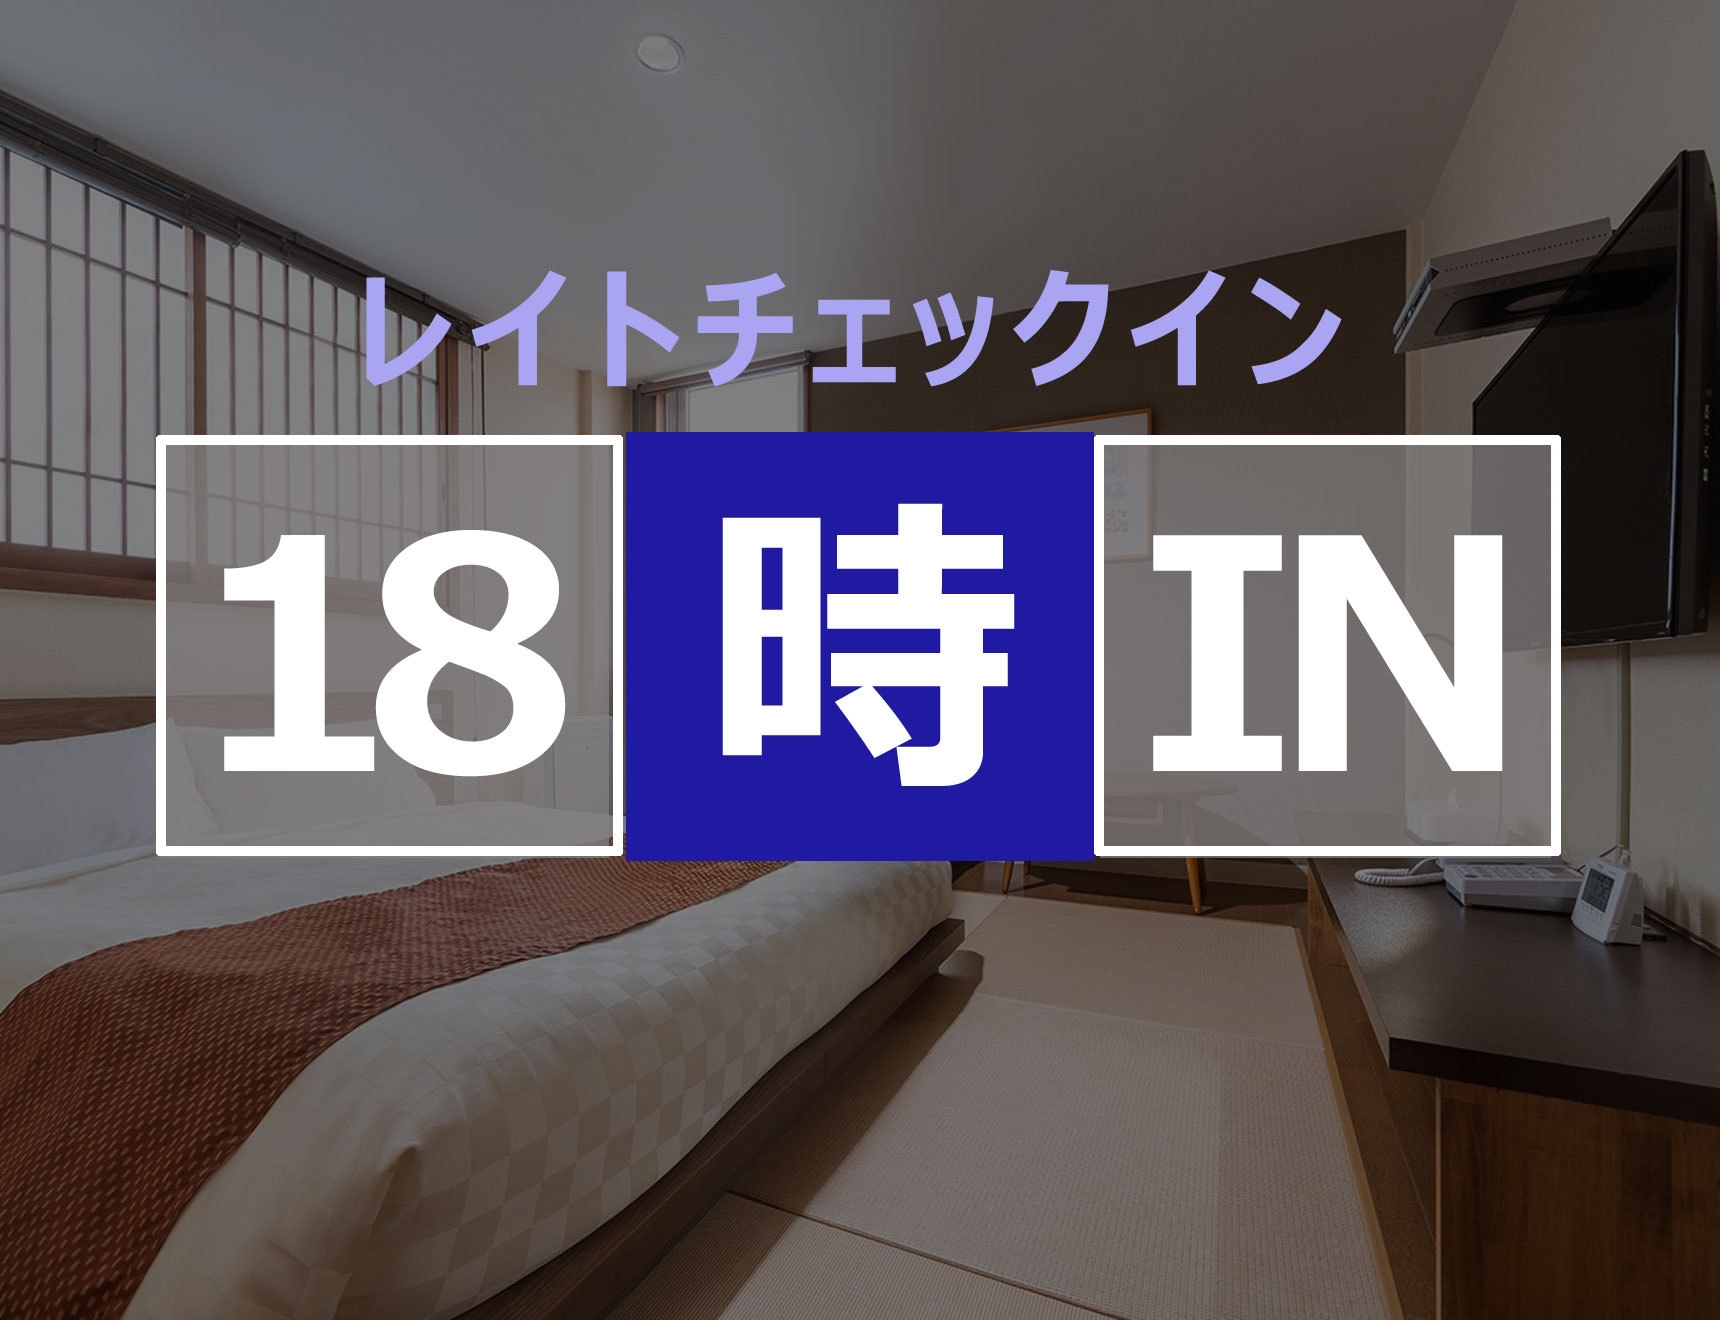 【18時イン】素泊まり・レイトチェックインプラン